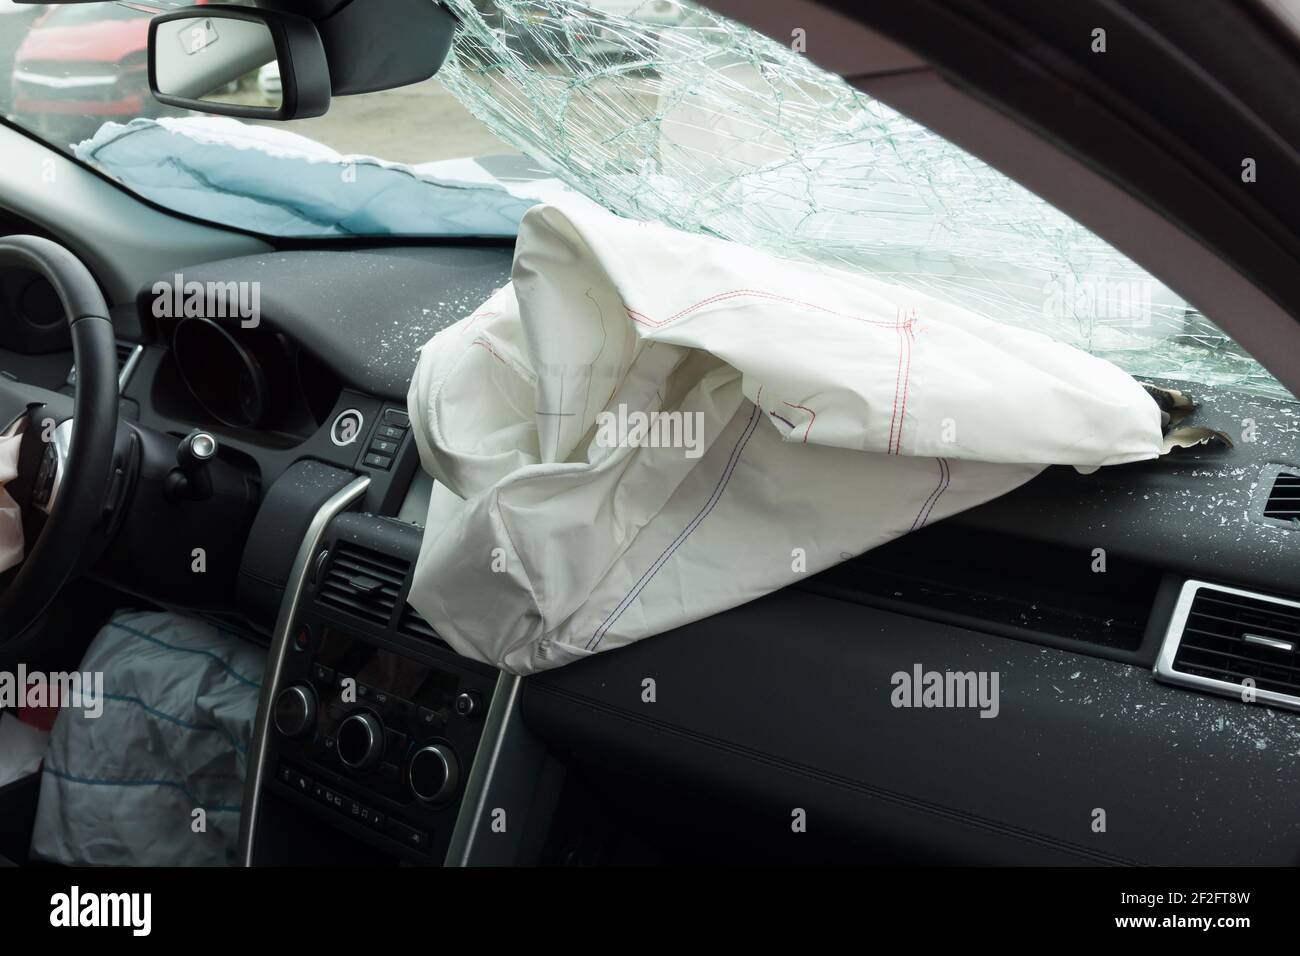 Innenraum eines Autos oder Autos, die an einem Fahrzeug beteiligt sind Absturz mit einem ausgelöste Beifahrer-Seitenairbag Stockfoto